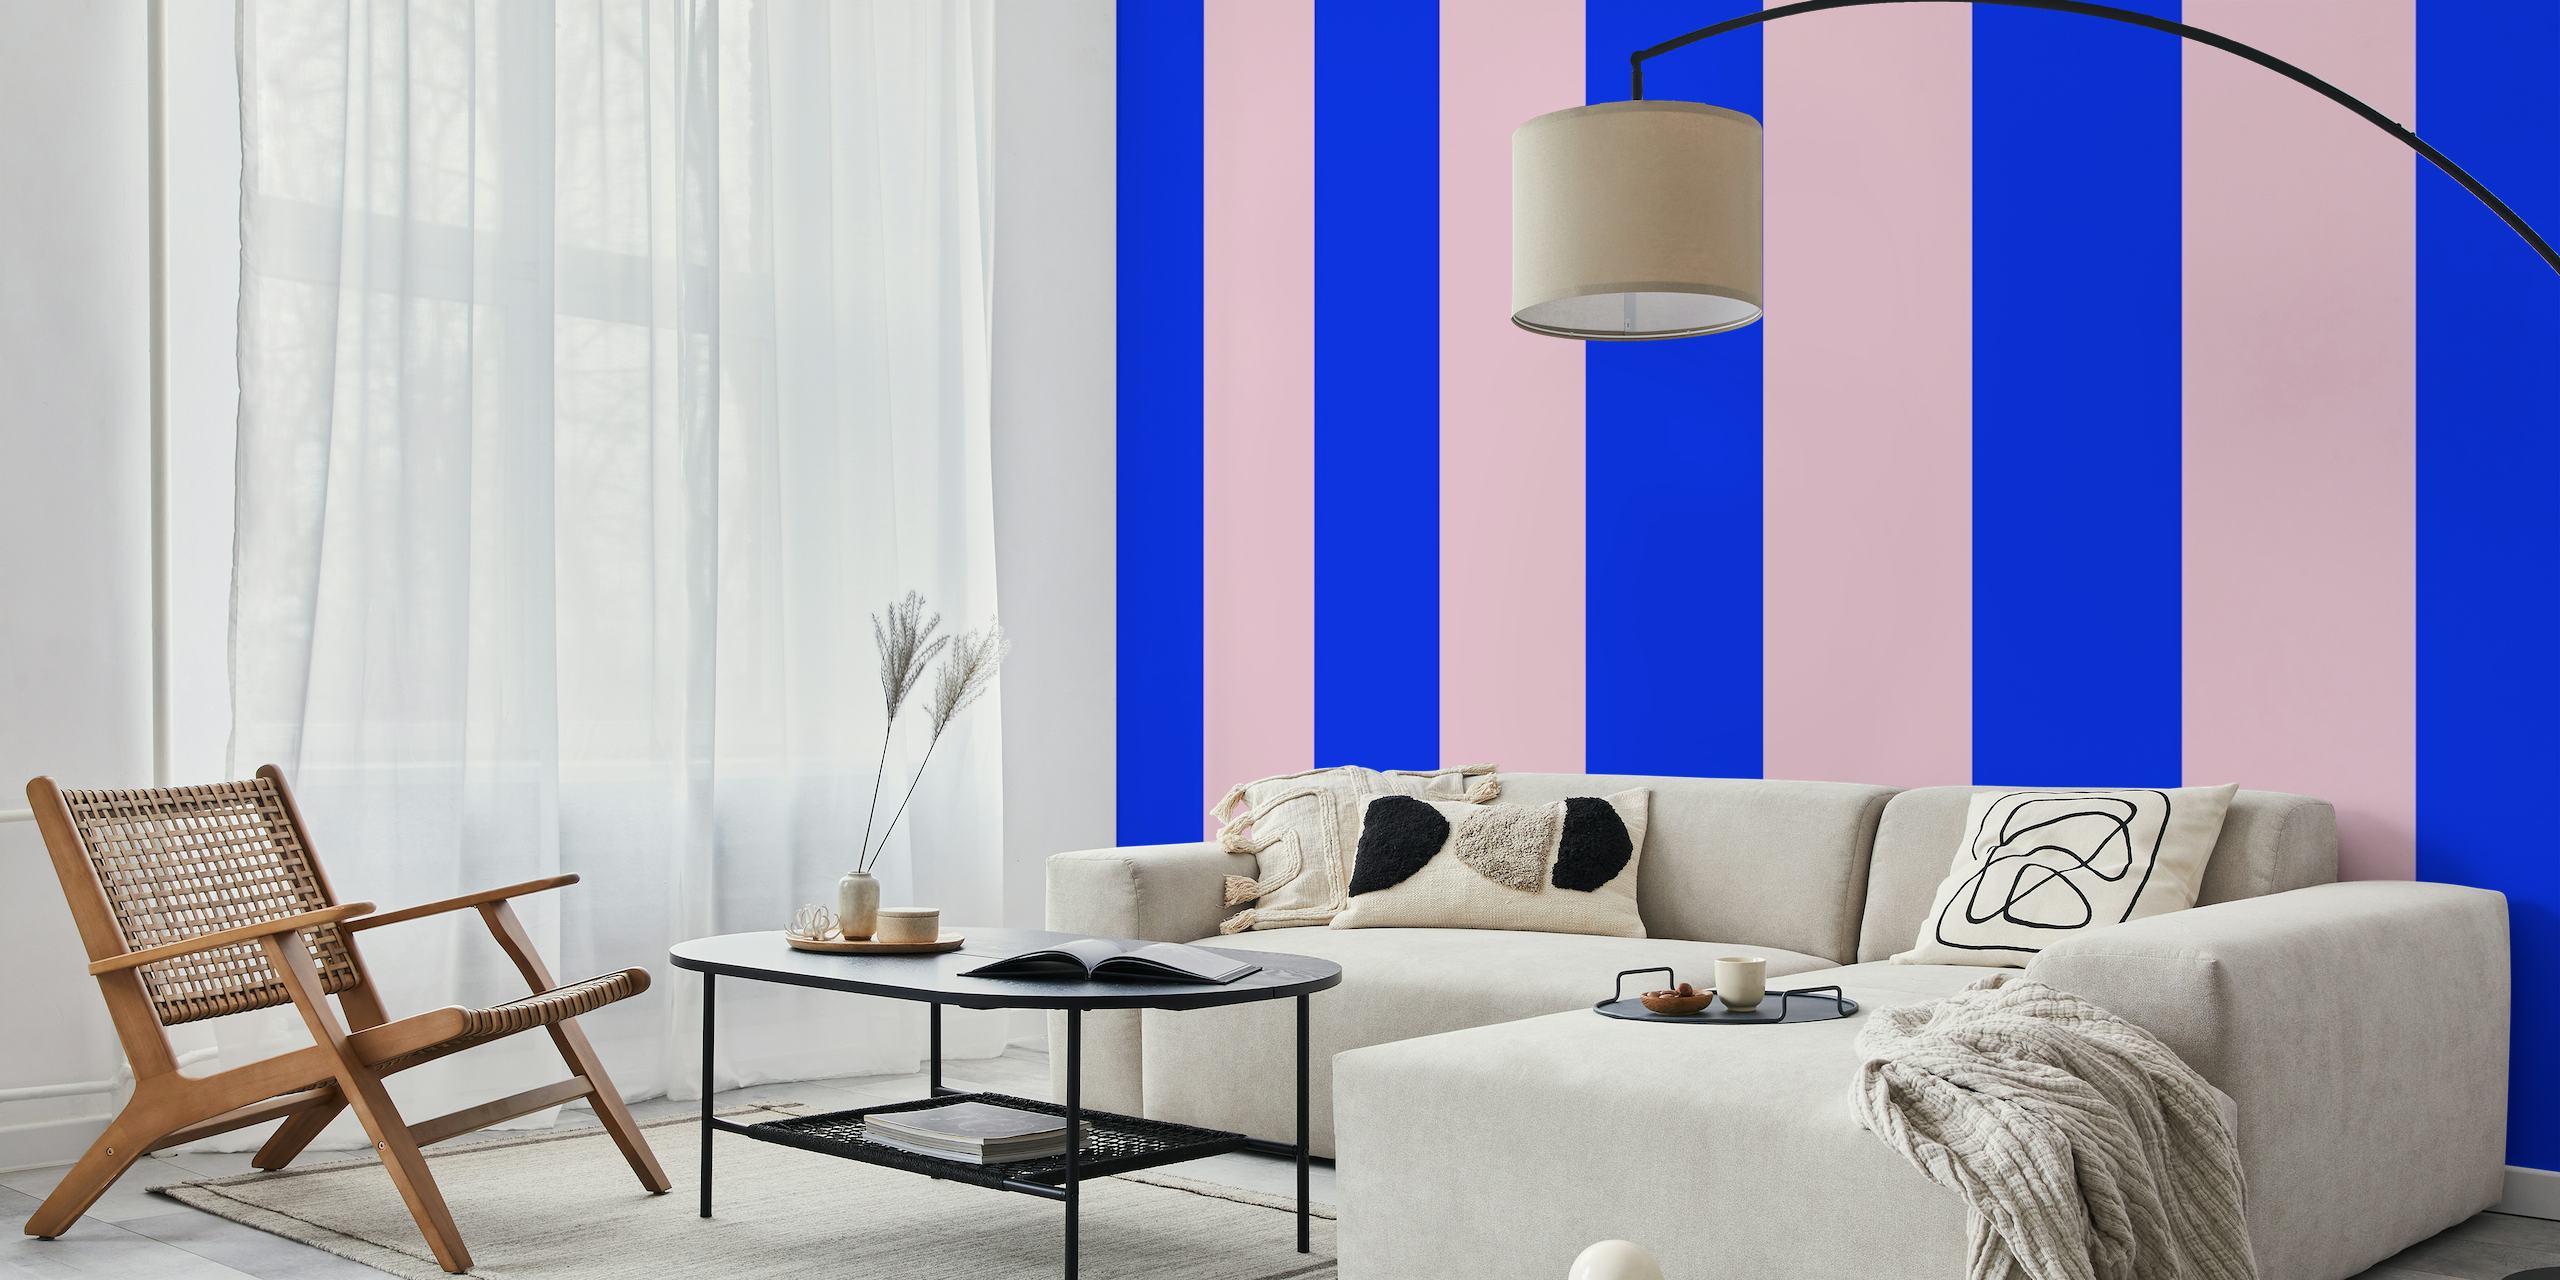 Sini- ja vaaleanpunainen raidallinen seinämaalaus Happywallilta nimeltä Blau Rosa Streifen